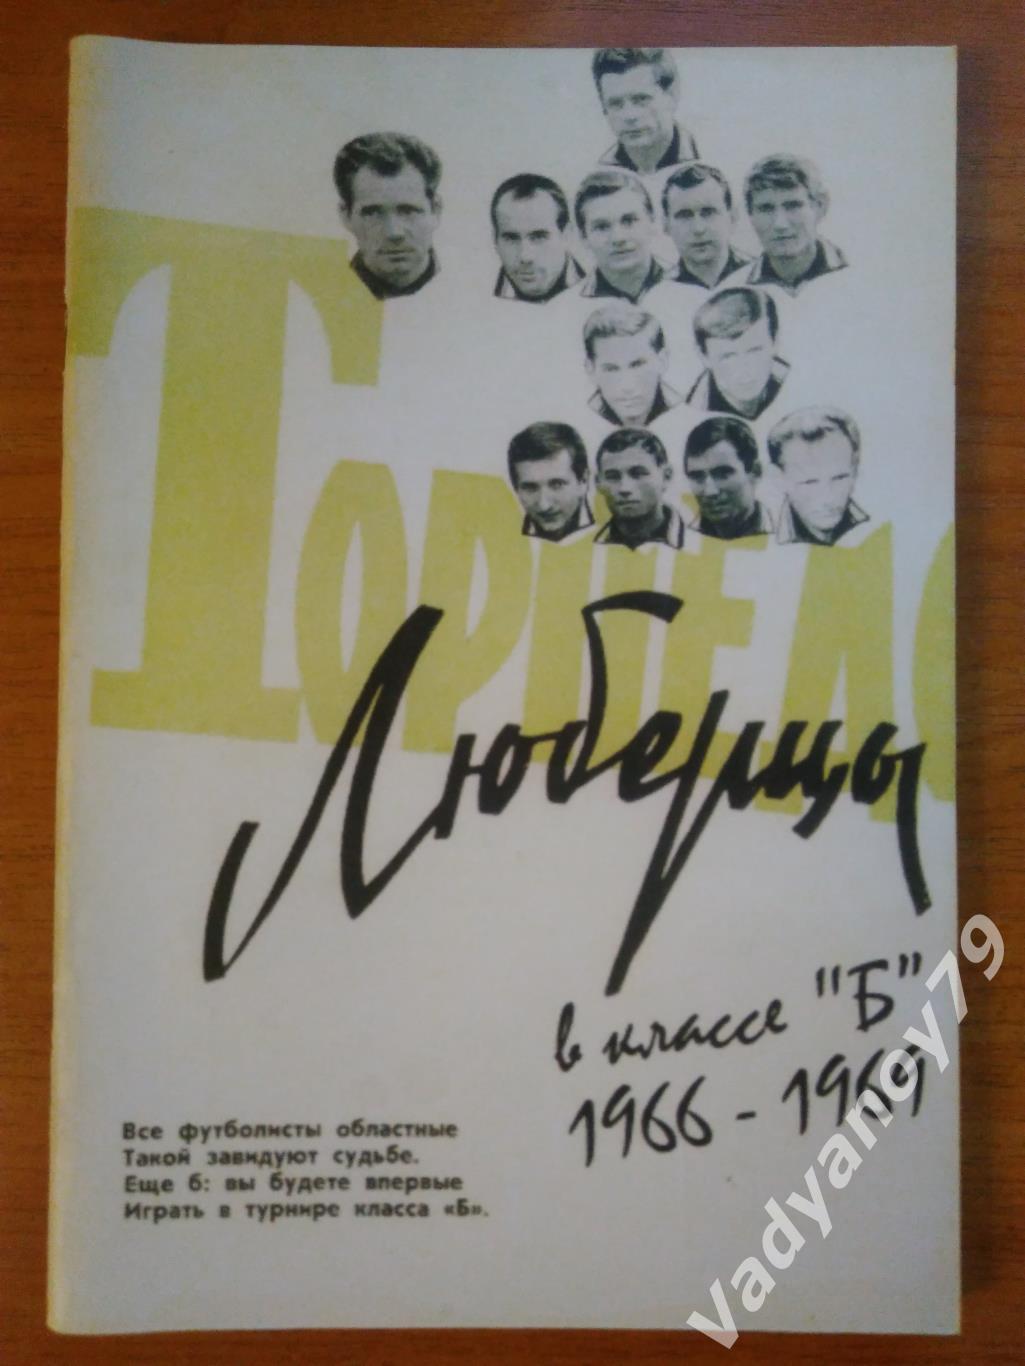 Футбол. Торпедо (Люберцы) в классе Б (1966 - 1969) А. Серебренников. 2009